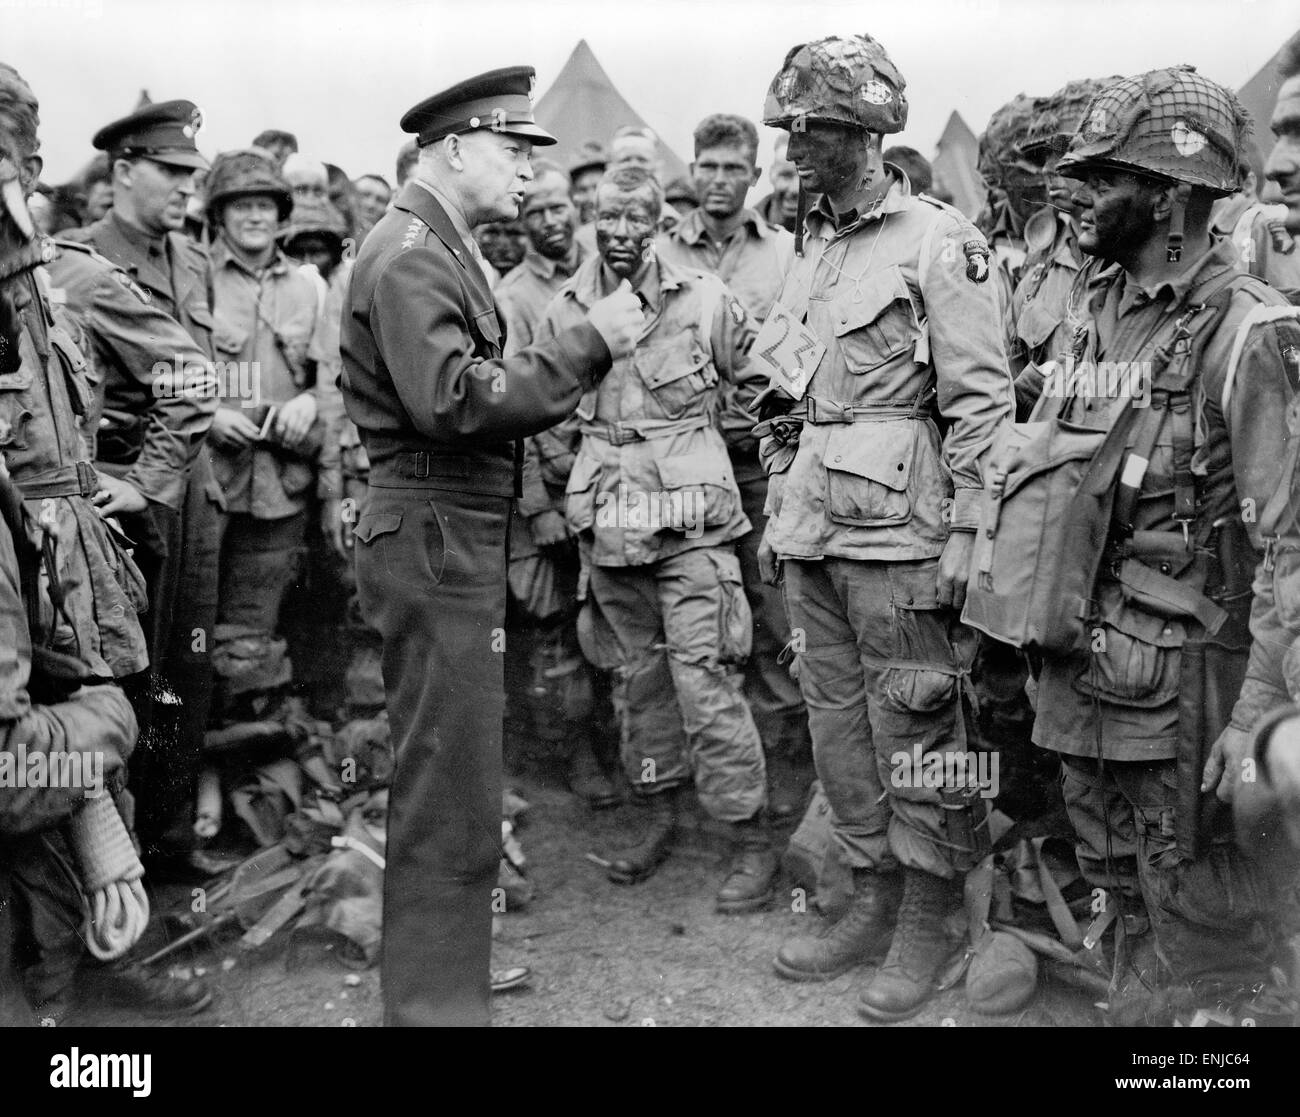 Le général Dwight D. Eisenhower donne l'ordre du jour, "pleine victoire--rien d'autre" parachutistes quelque part en Angleterre, juste avant qu'ils bord de leurs avions pour participer à la première agression dans l'invasion du continent de l'Europe le 5 juin, 1944 Banque D'Images